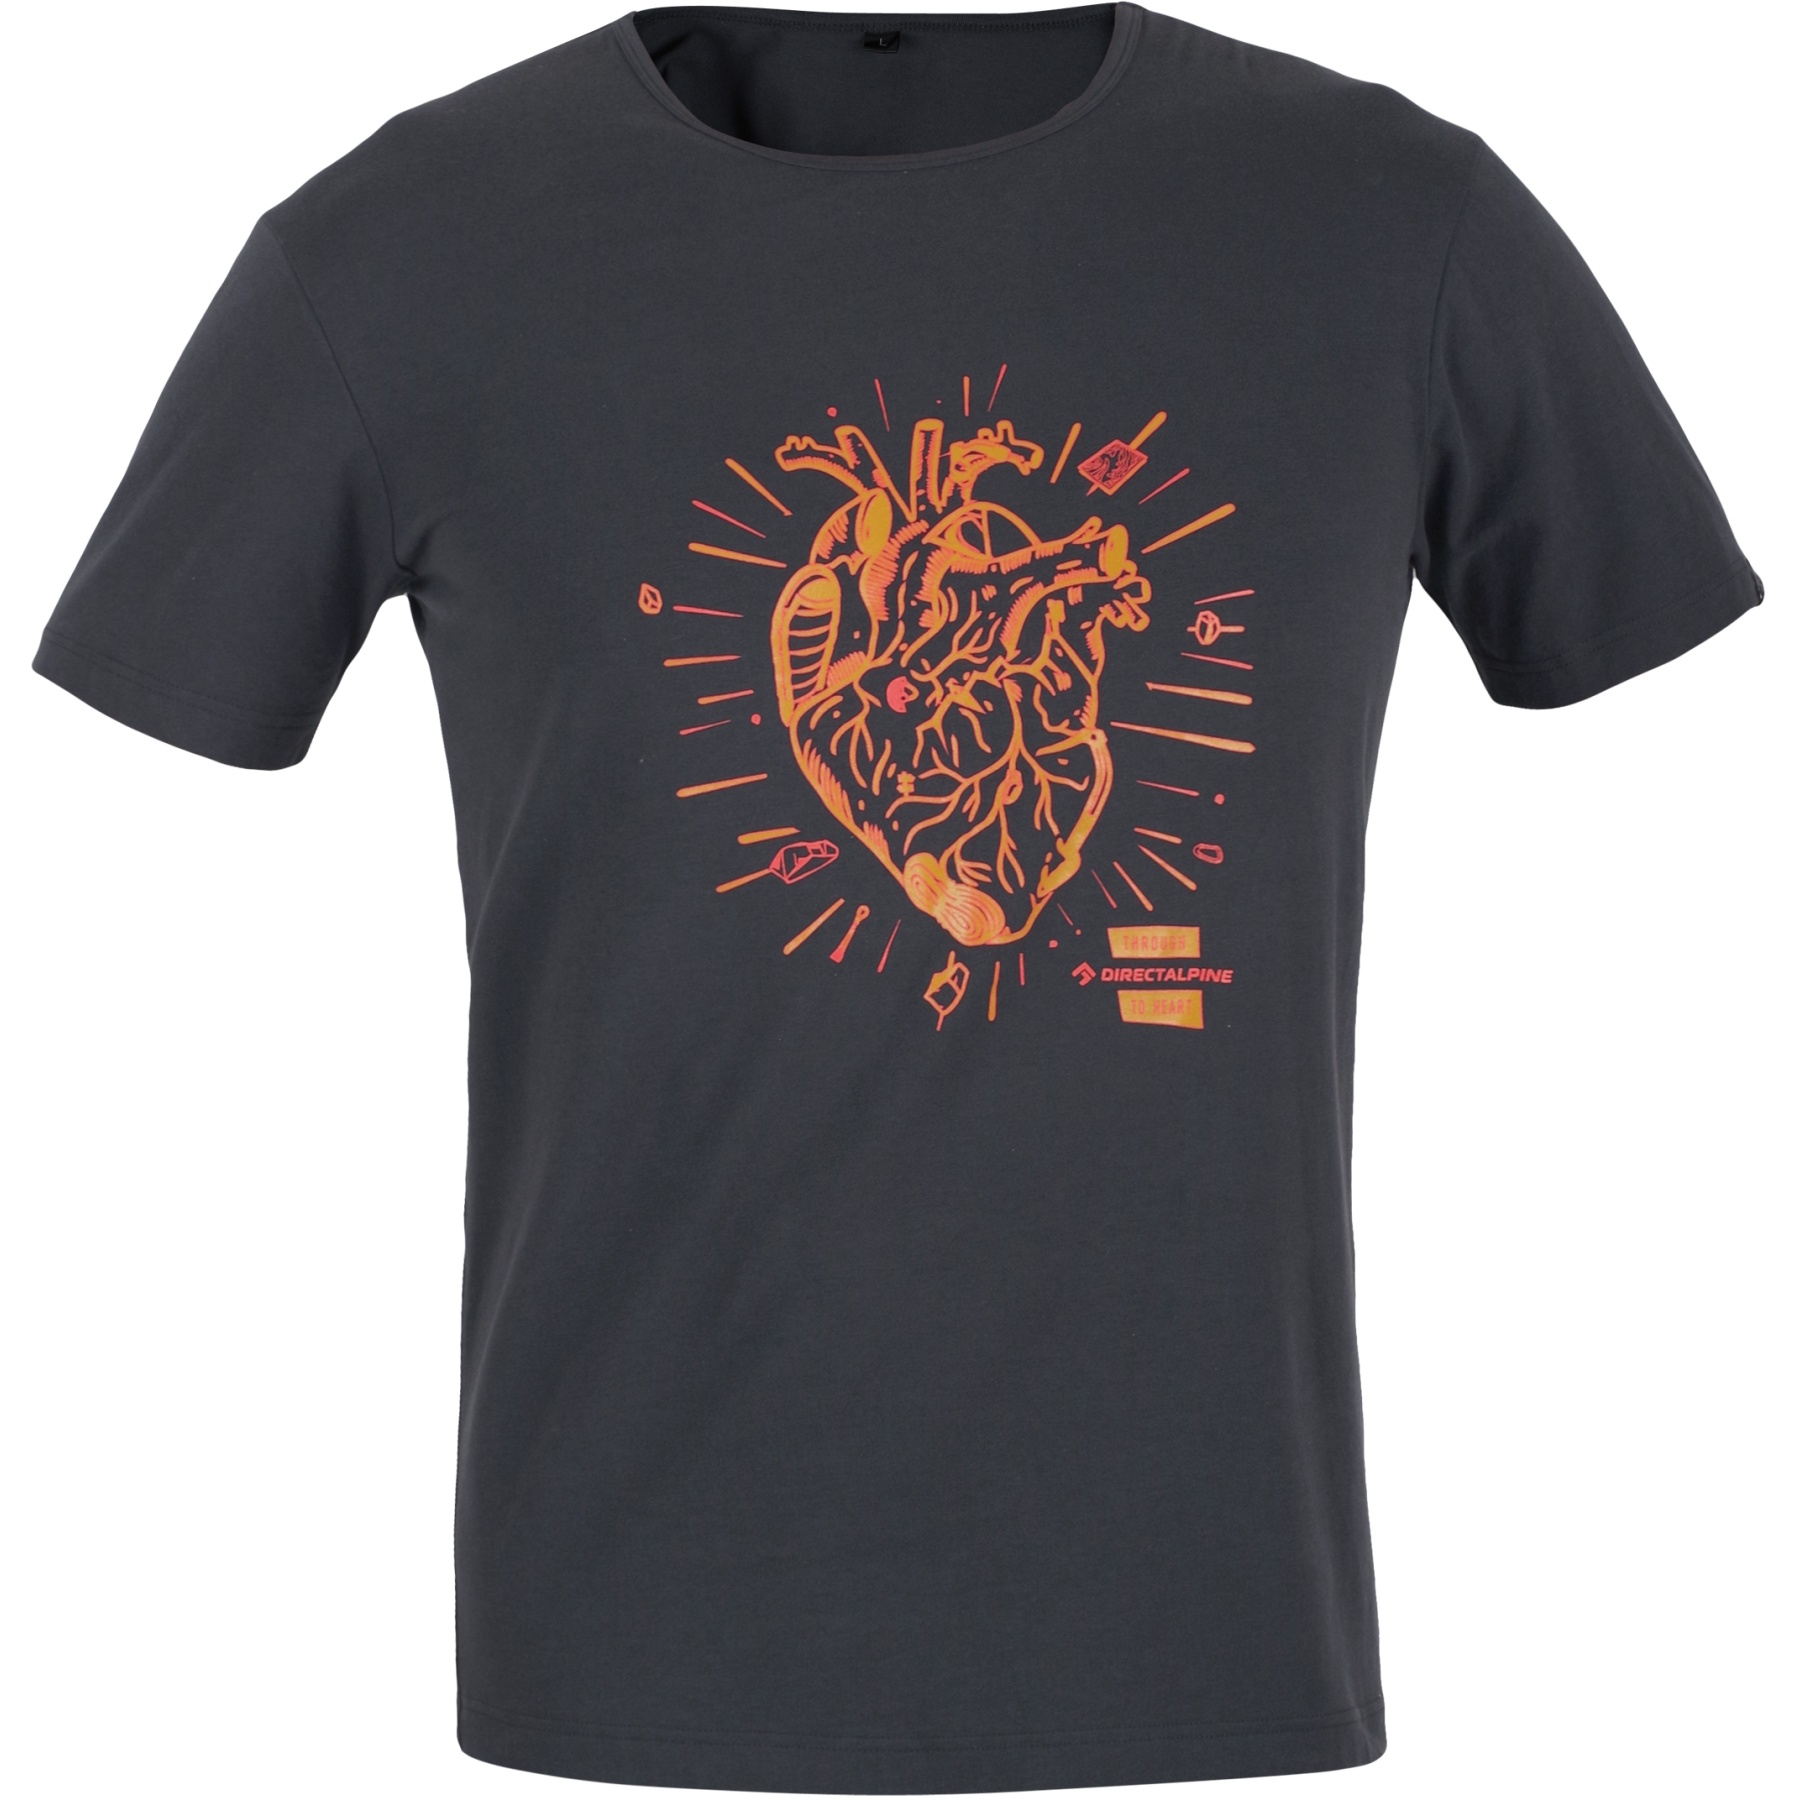 Produktbild von Directalpine Flash T-Shirt - anthracite (heart)